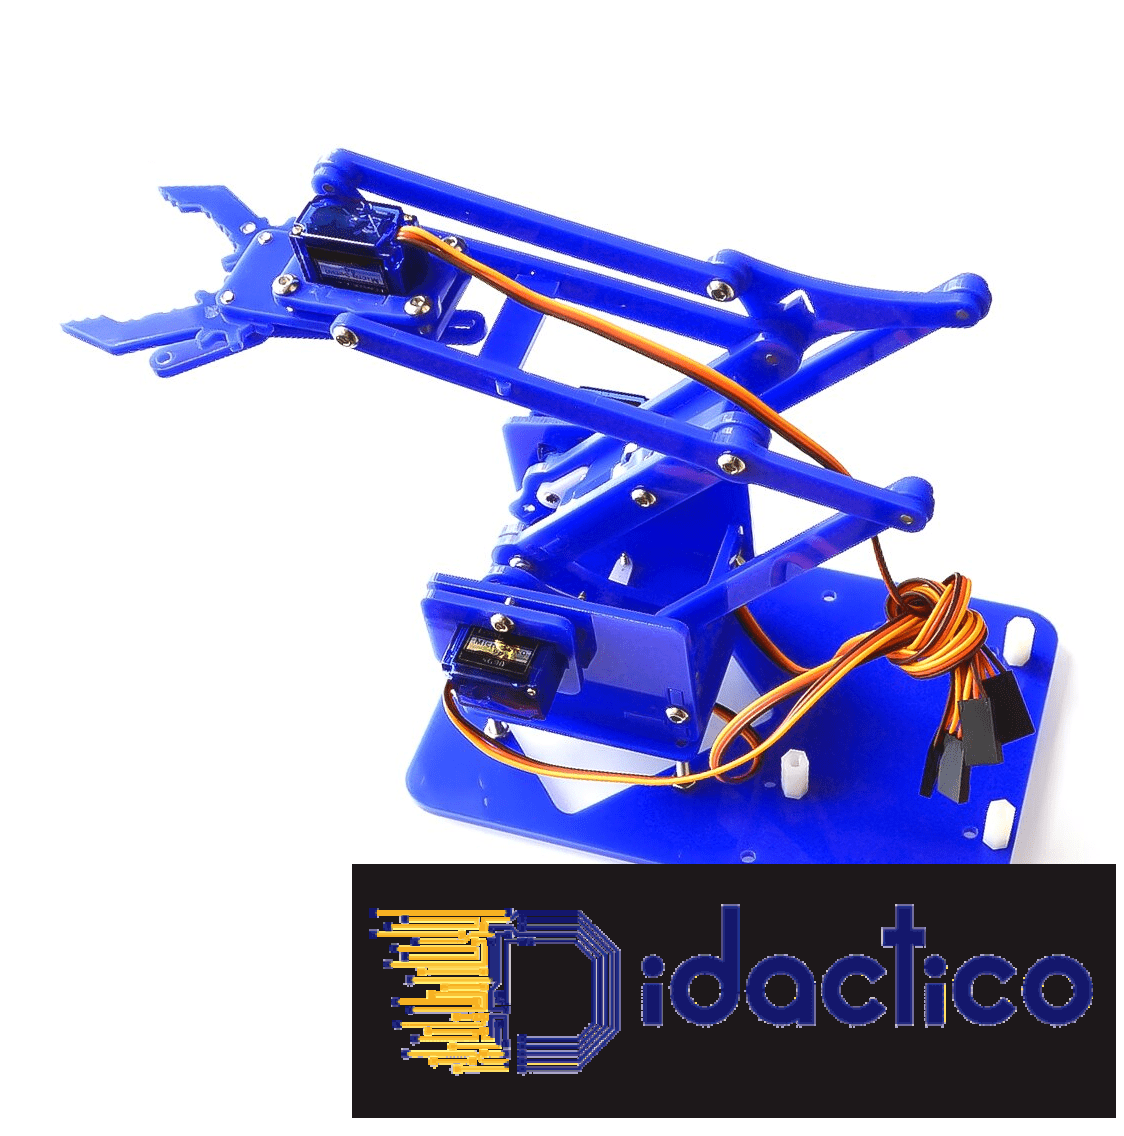 Kit de bras robotique Arduino 4DOF Bleu avec 4 servos DIDACTICO TUNISIE